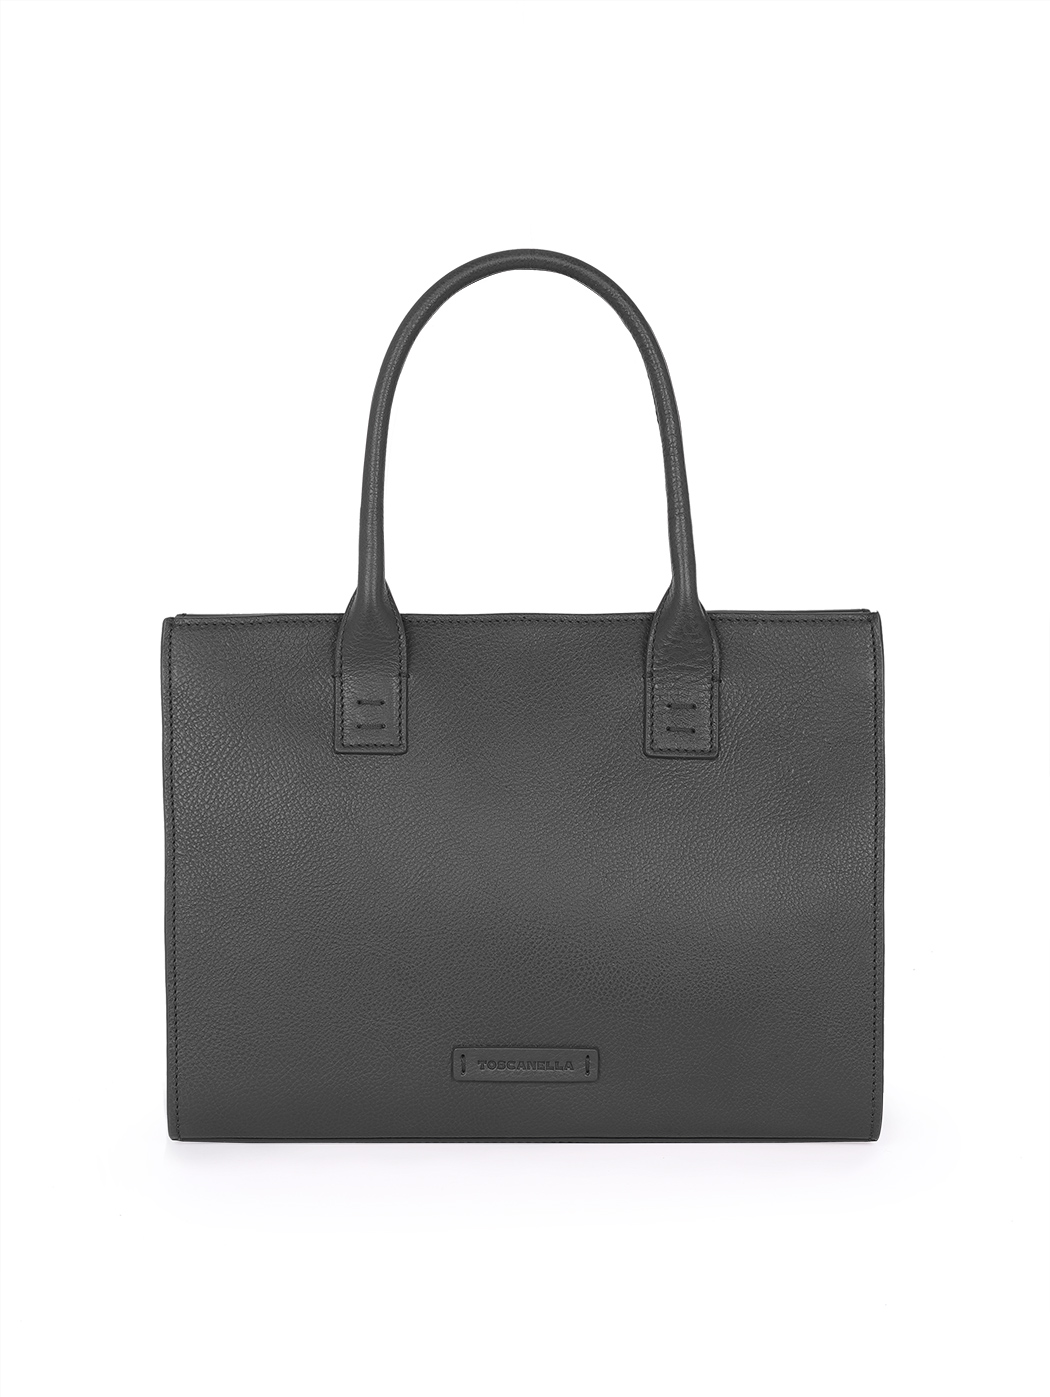 Black handbag with shoulder strap